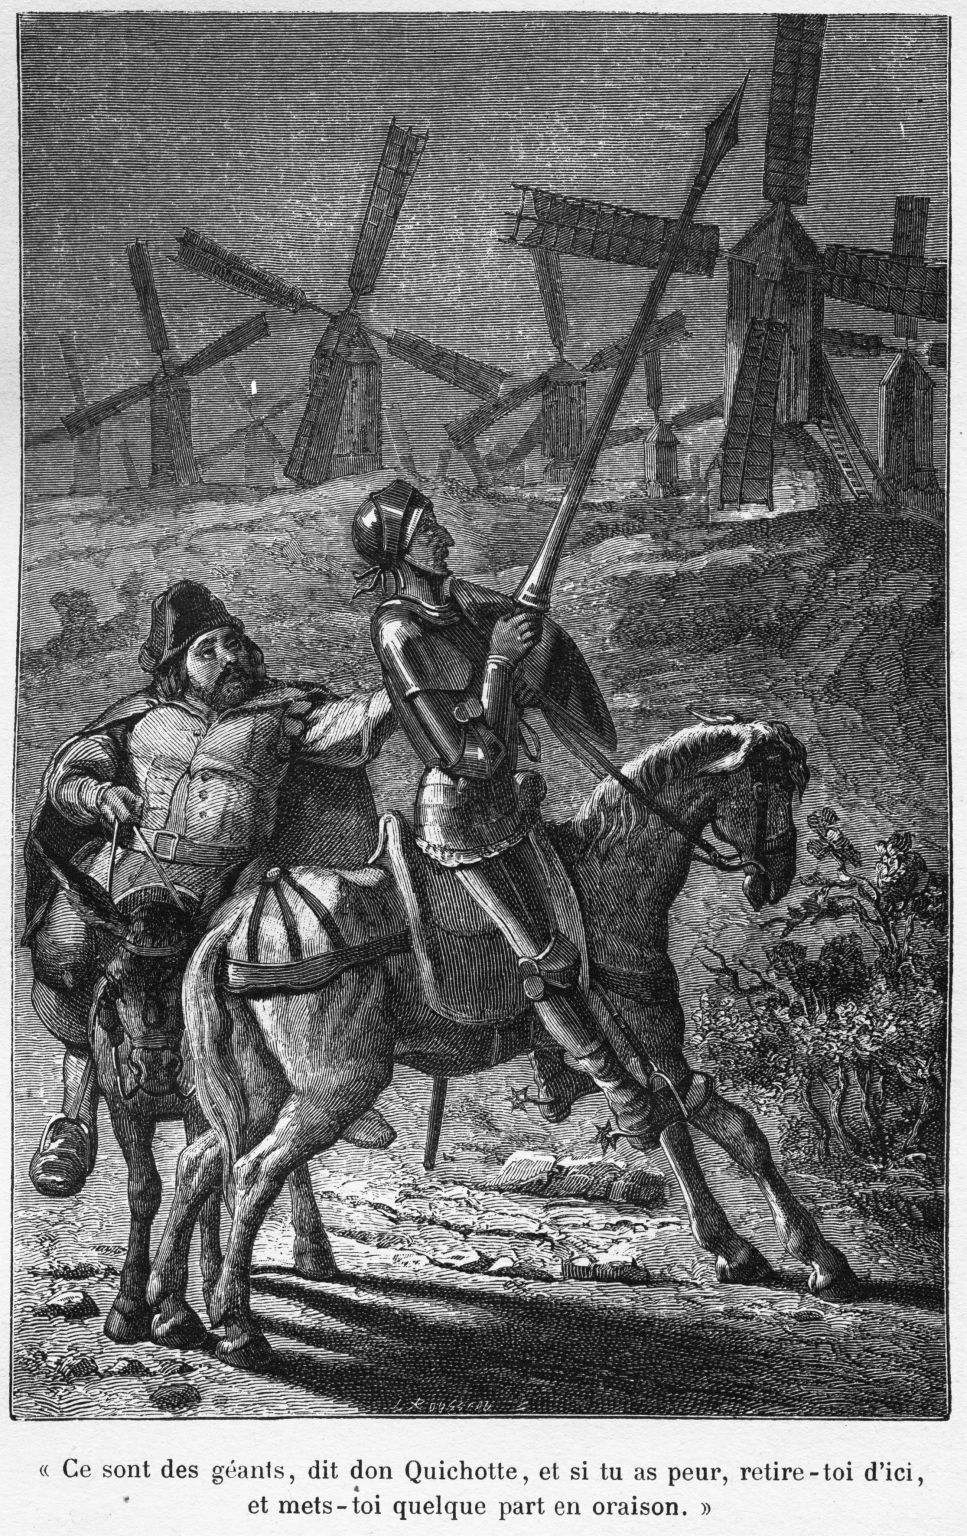 Don Quichotte, monté sur son cheval Rossinante, s’adresse à Sancho Pansa avant d’attaquer des moulins à vent qu’il prend pour des géants